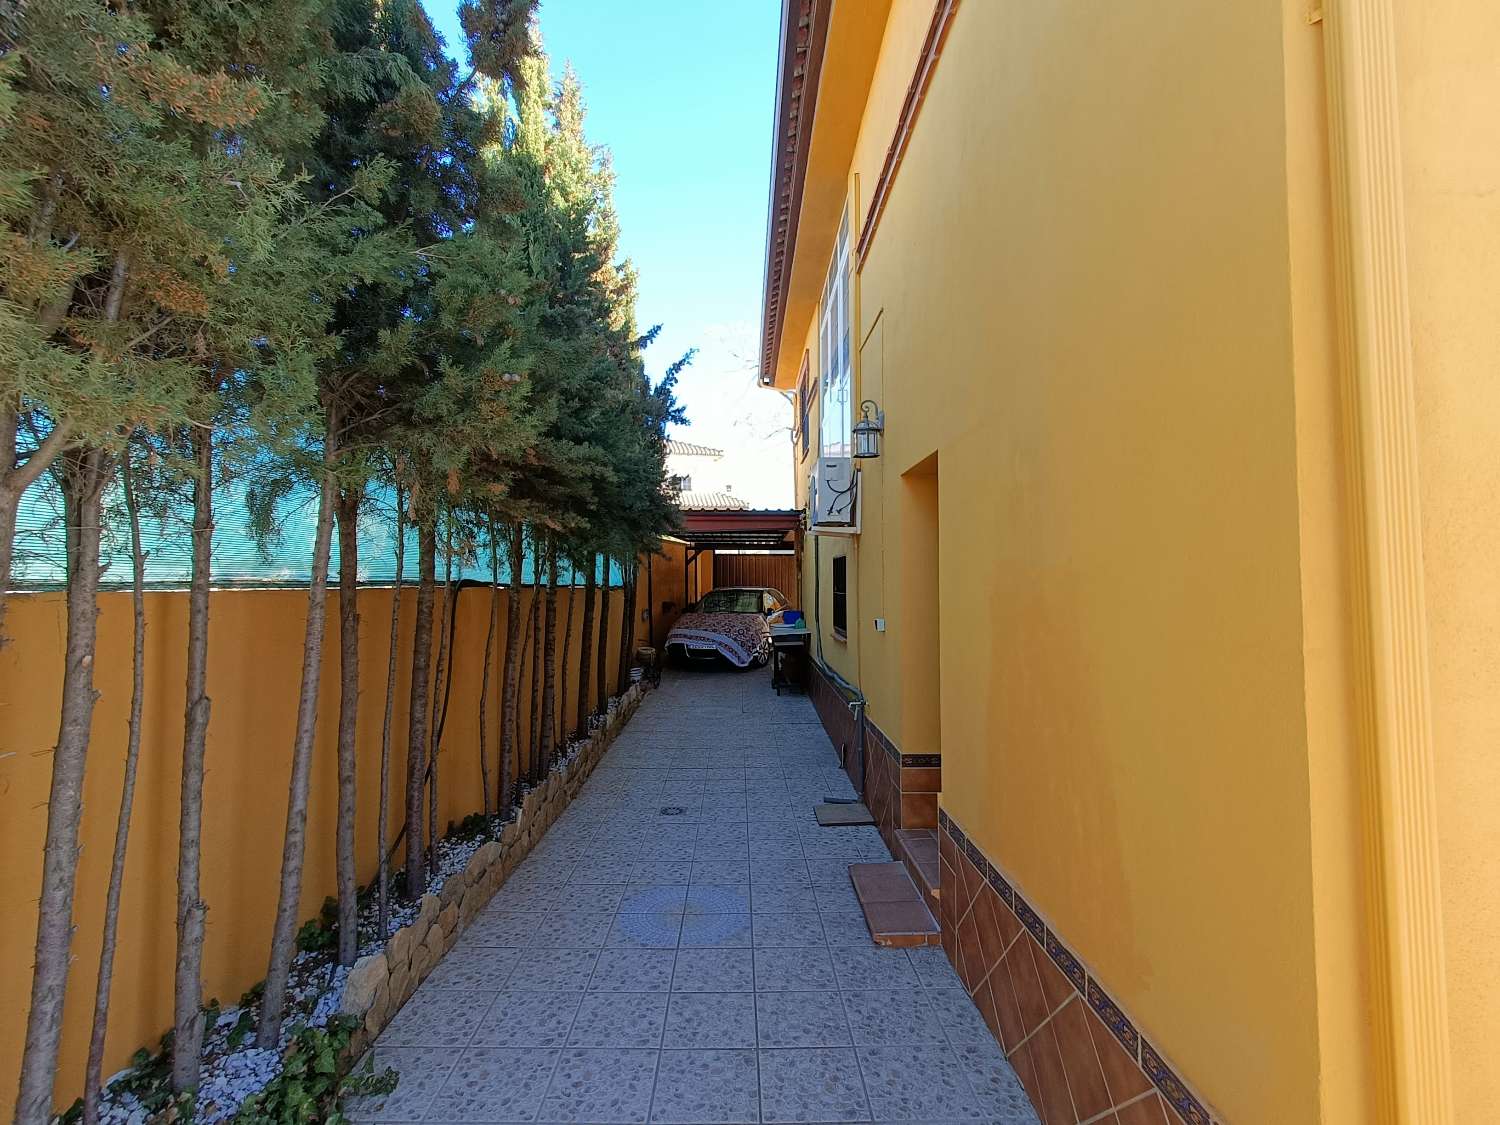 Groot vrijstaand huis met 2 aparte appartementen nabij de stad Granada